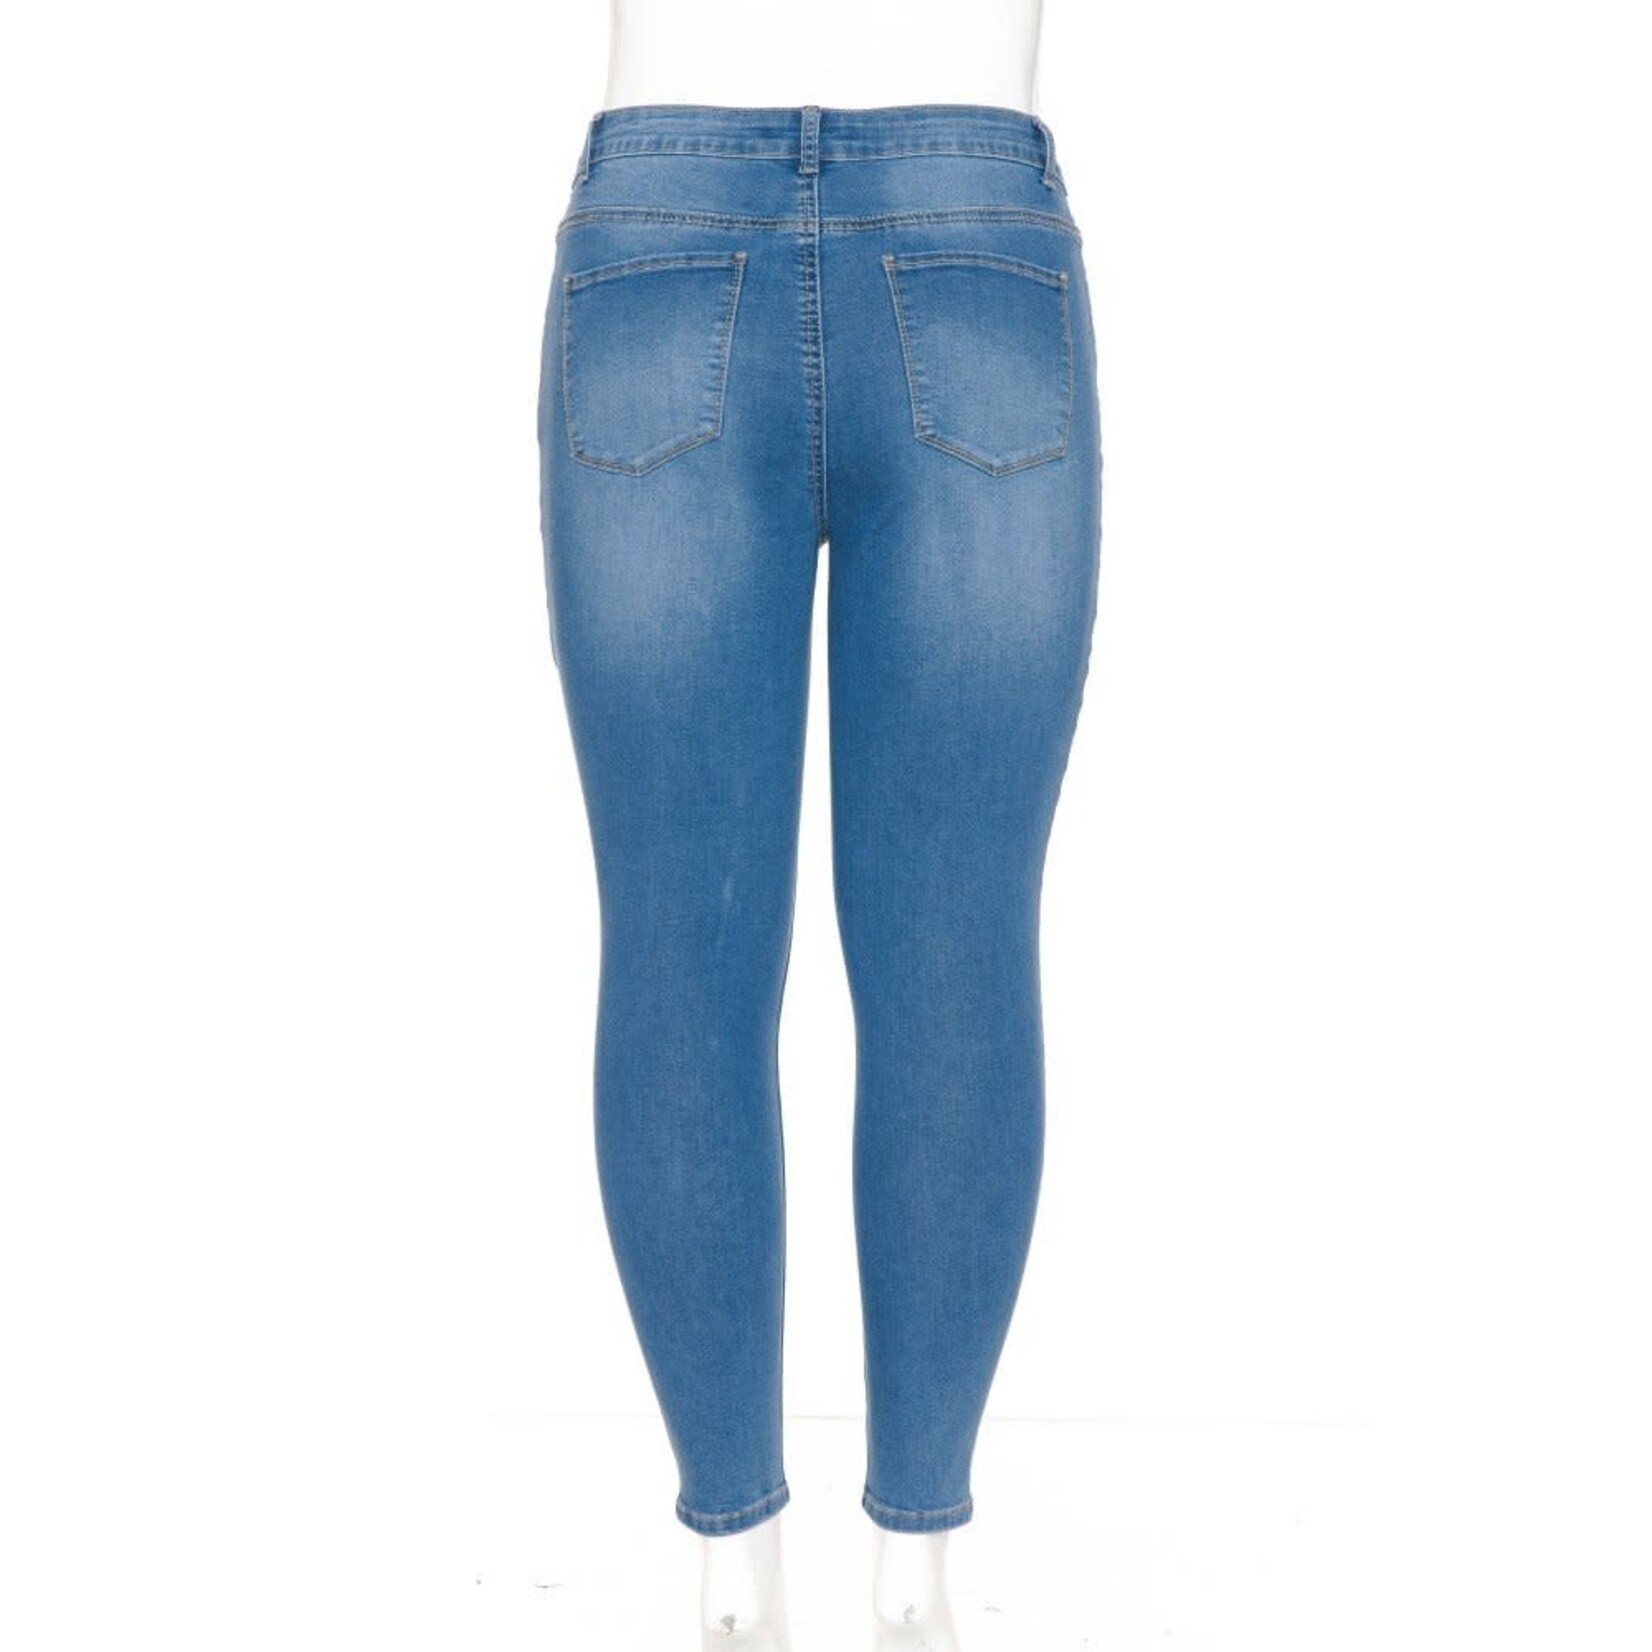 Wax Jeans Wax Jean - Women's Plus Super Stretchy High Rise Skinny Denim Jean - 90305XL